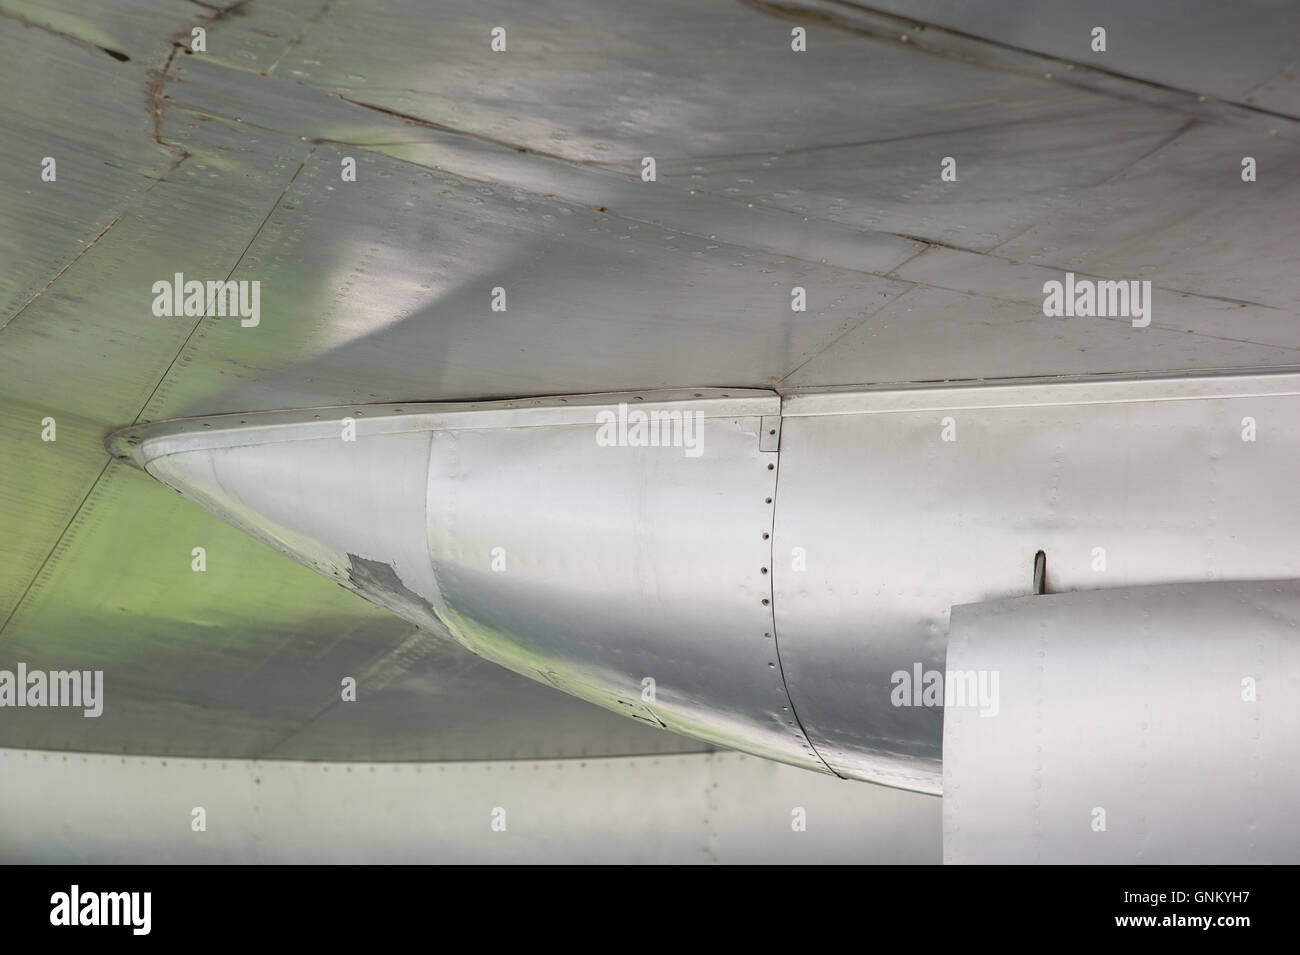 Aluminium-Rumpf und Nieten auf altes Flugzeug Stockfoto